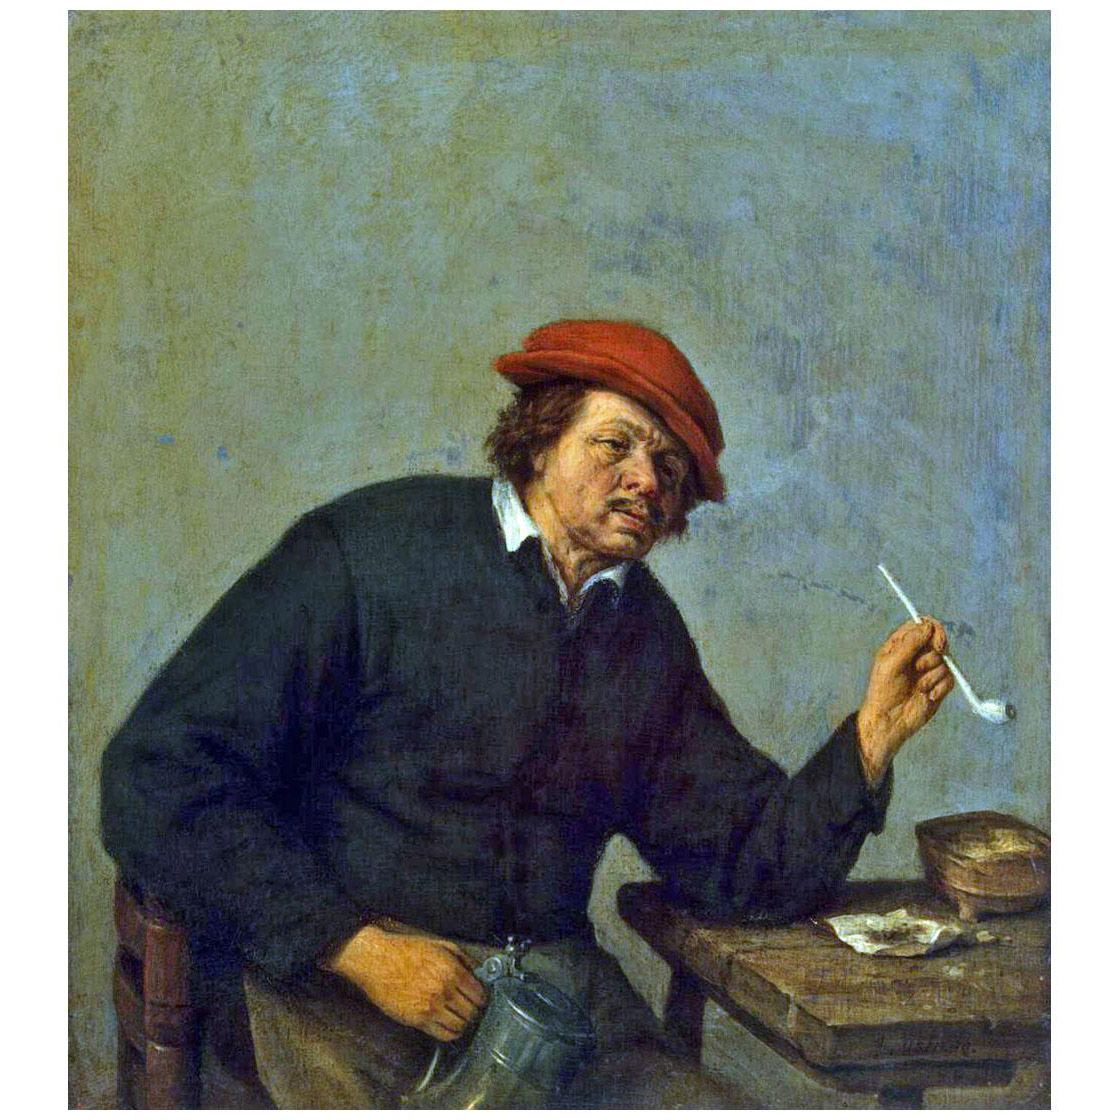 Adriaen van Ostade. Smoker. 1655. Hermitage Museum